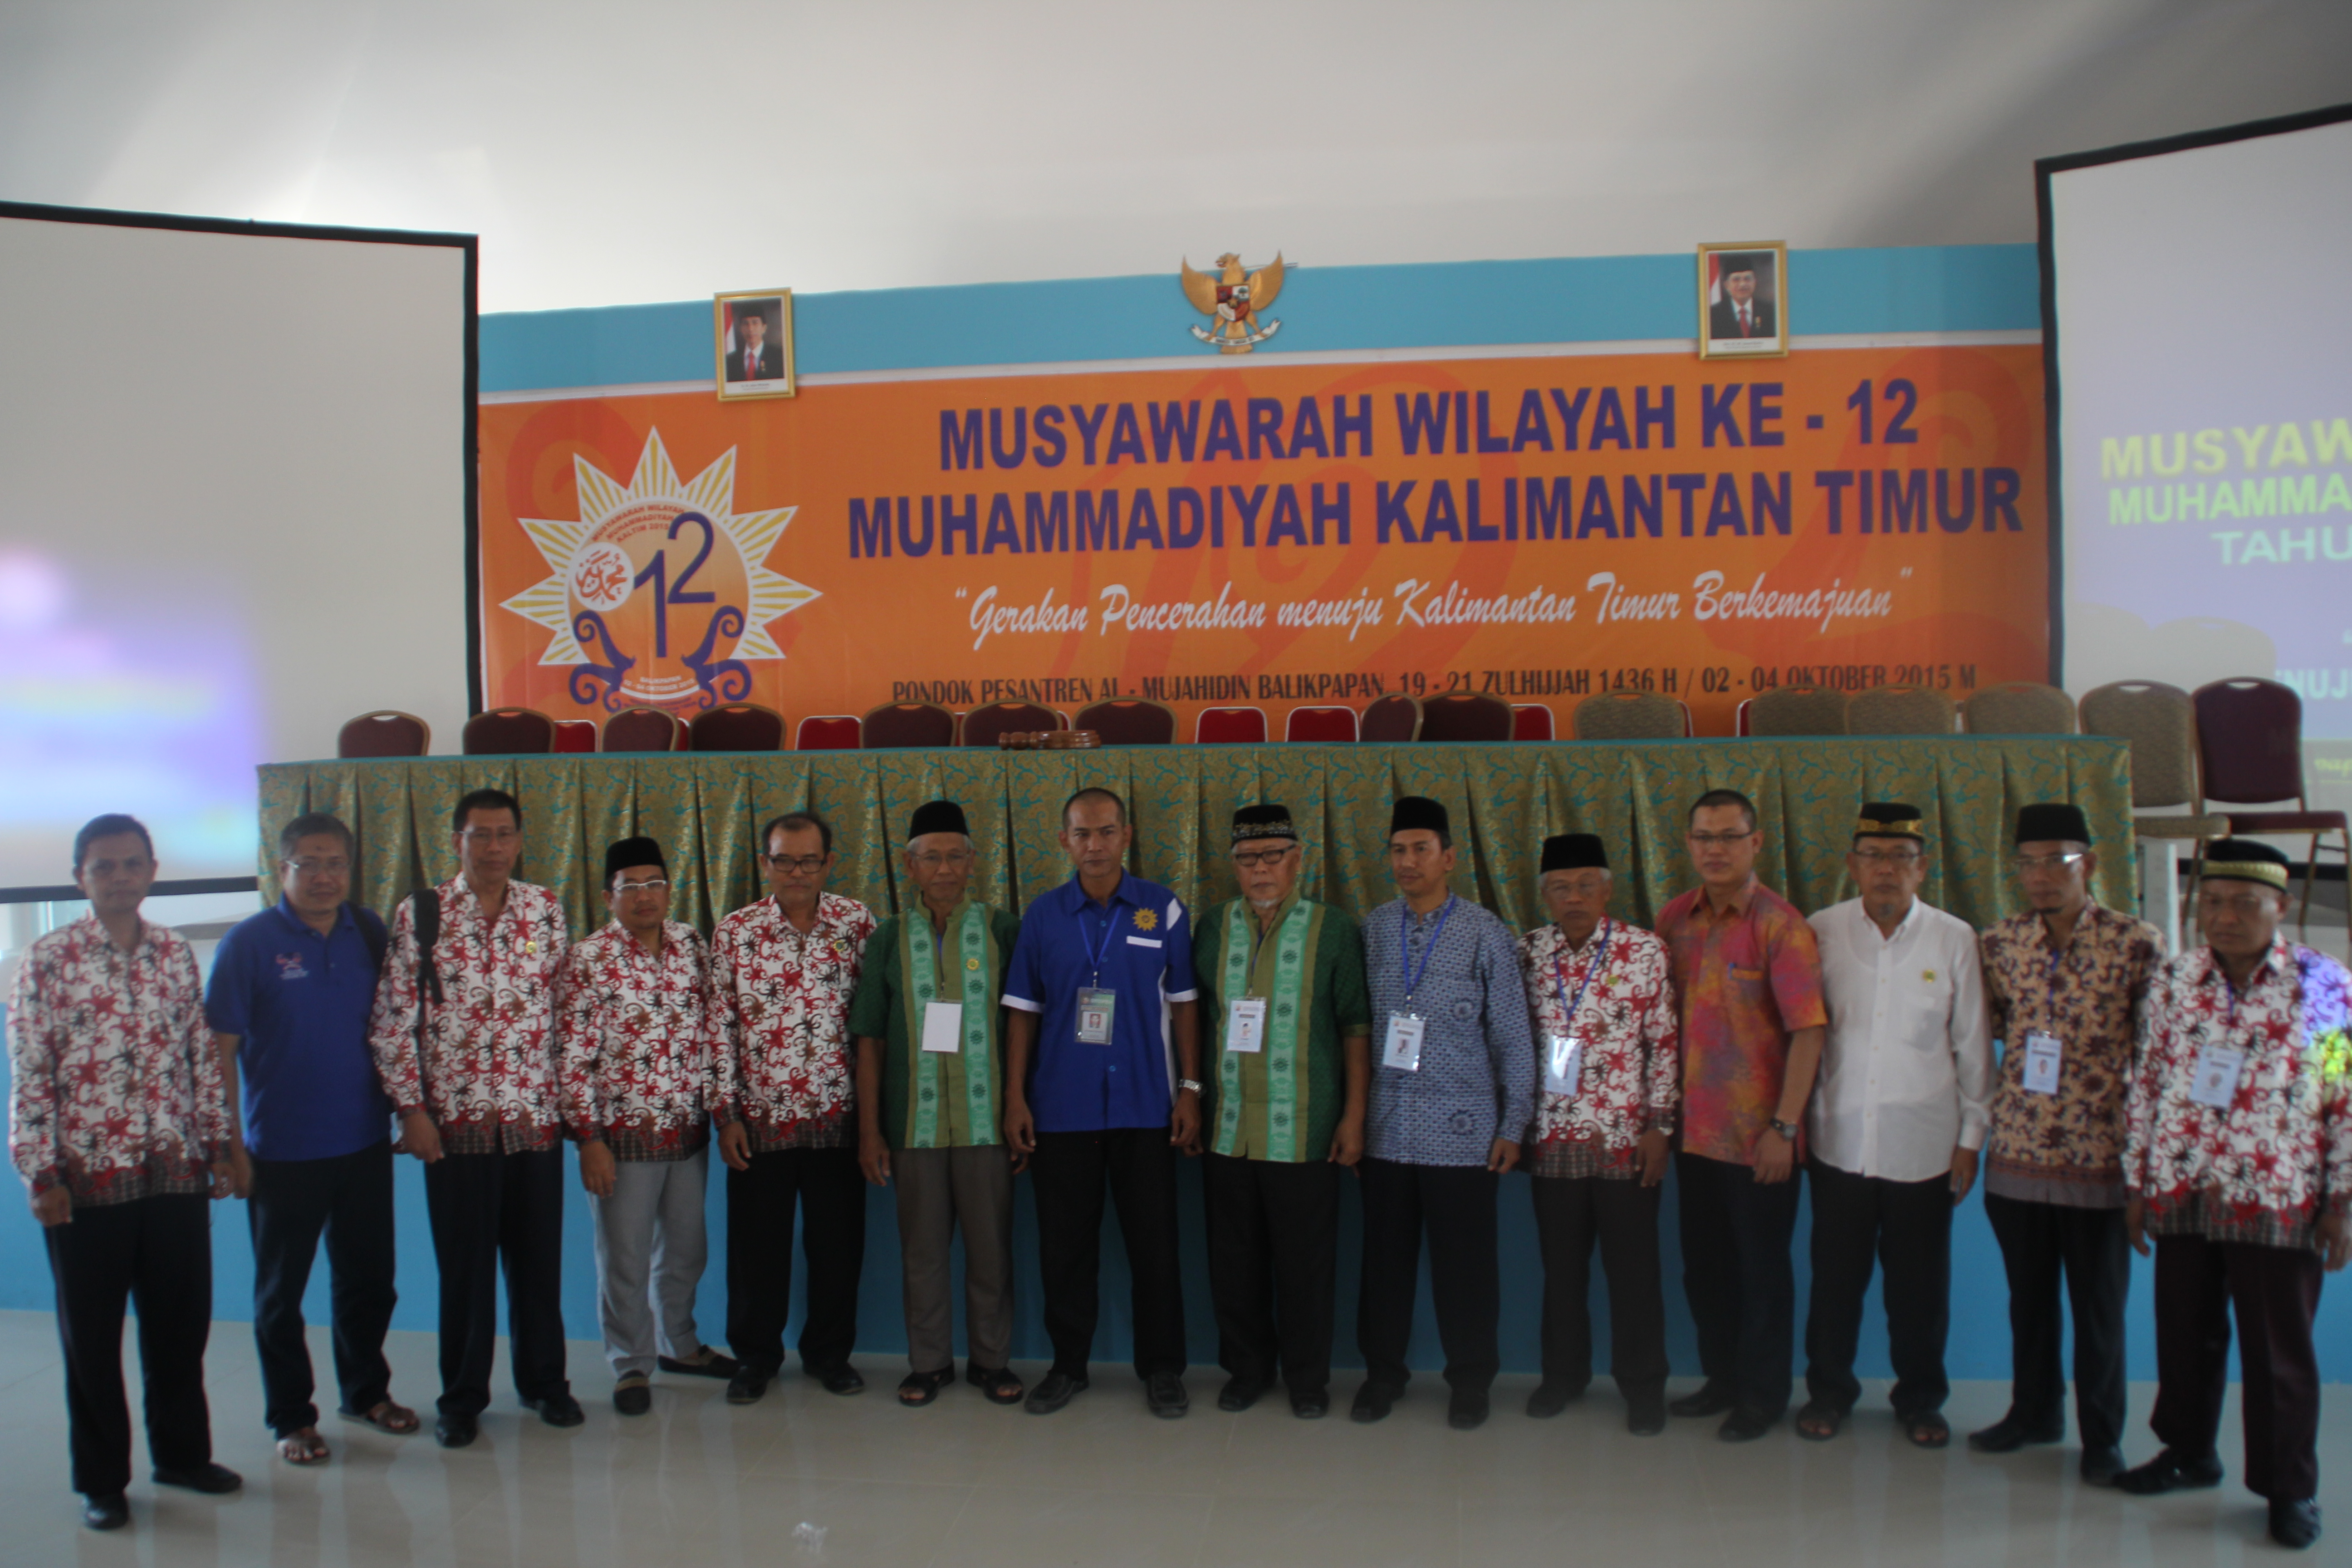  PW Muhammadiyah Kalimantan Timur